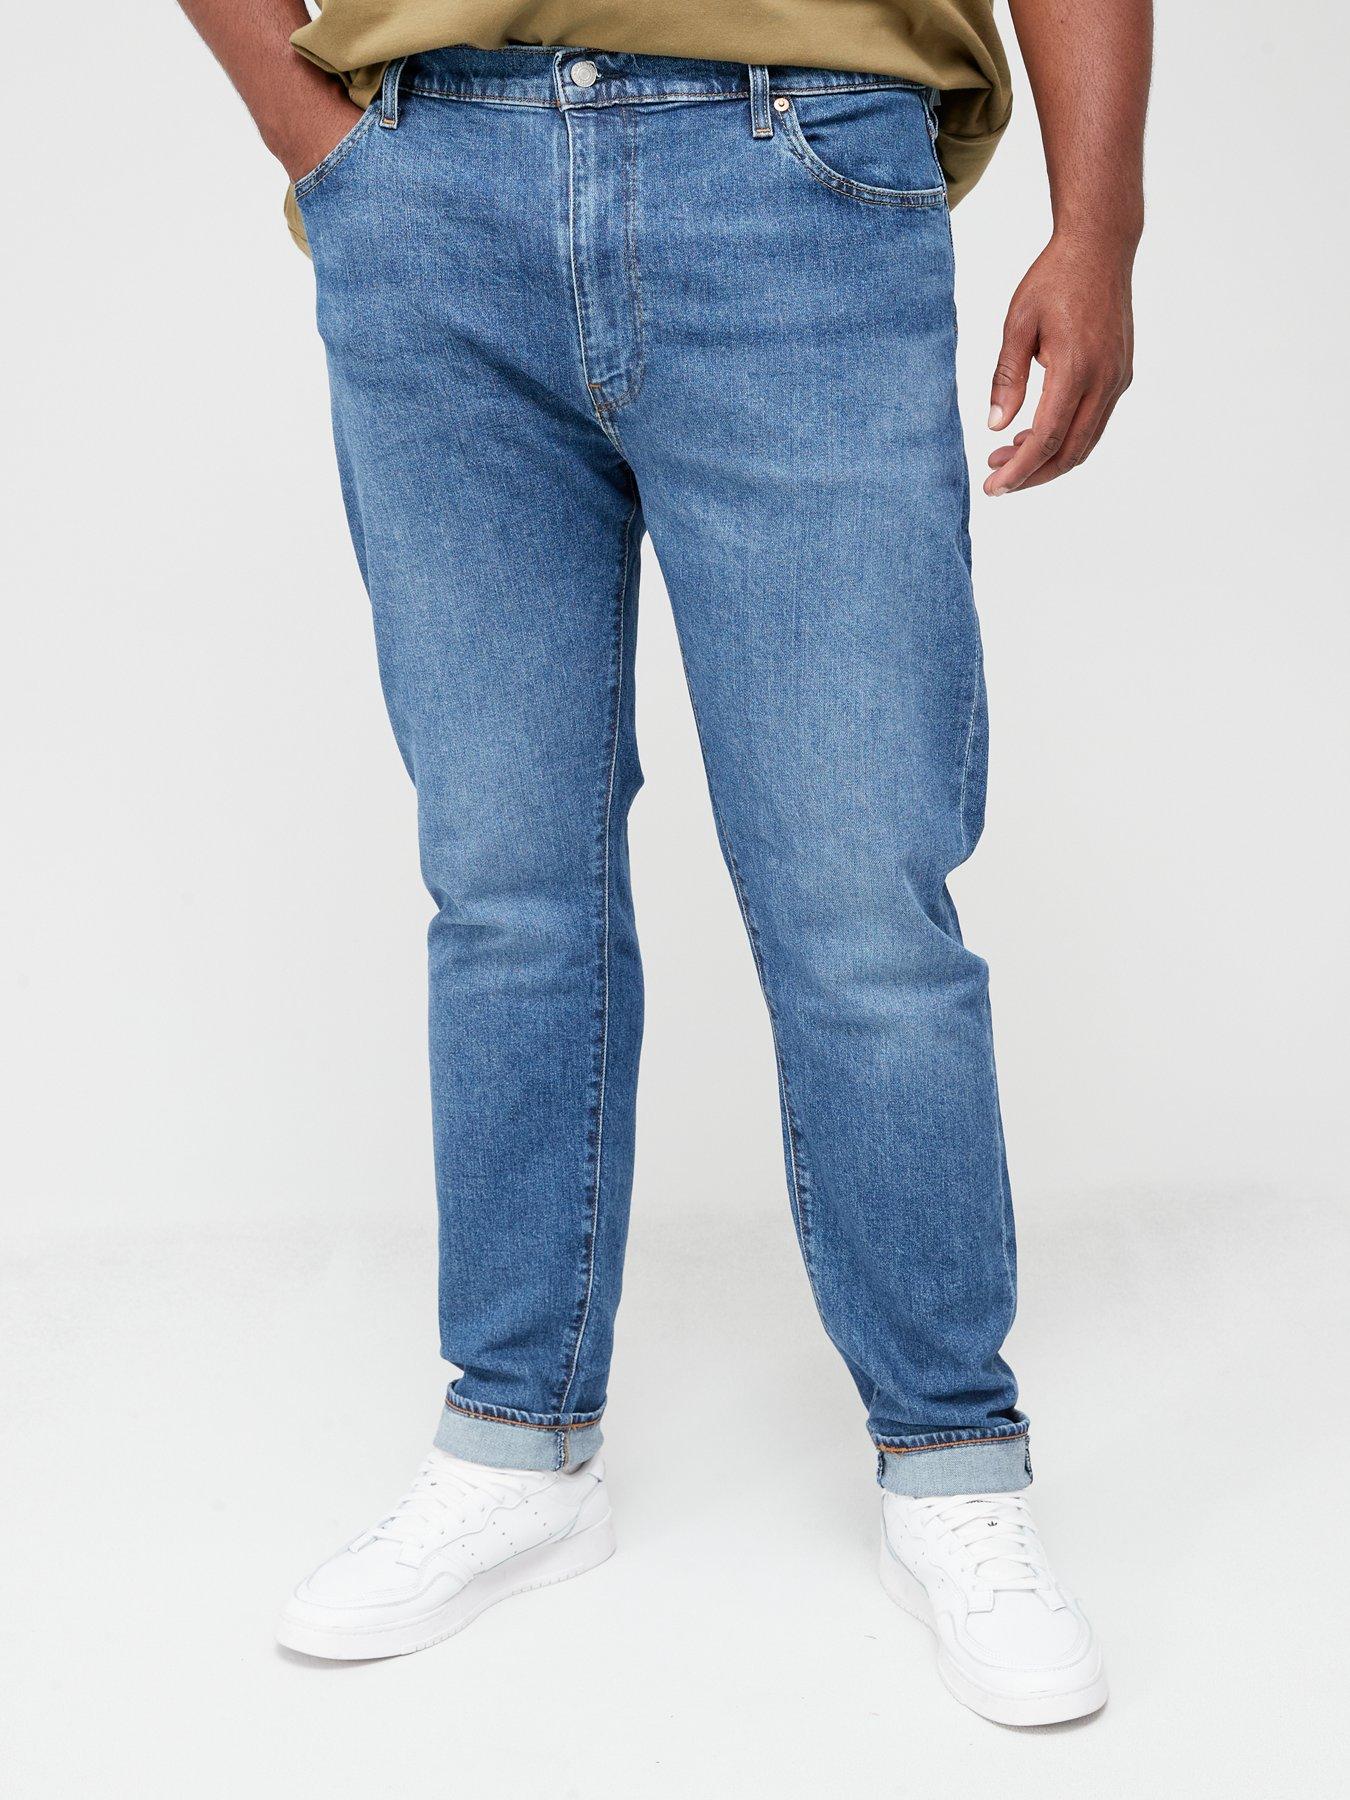 Levi's Big & Tall 512 Slim Taper Fit Jeans - Medium Indigo 